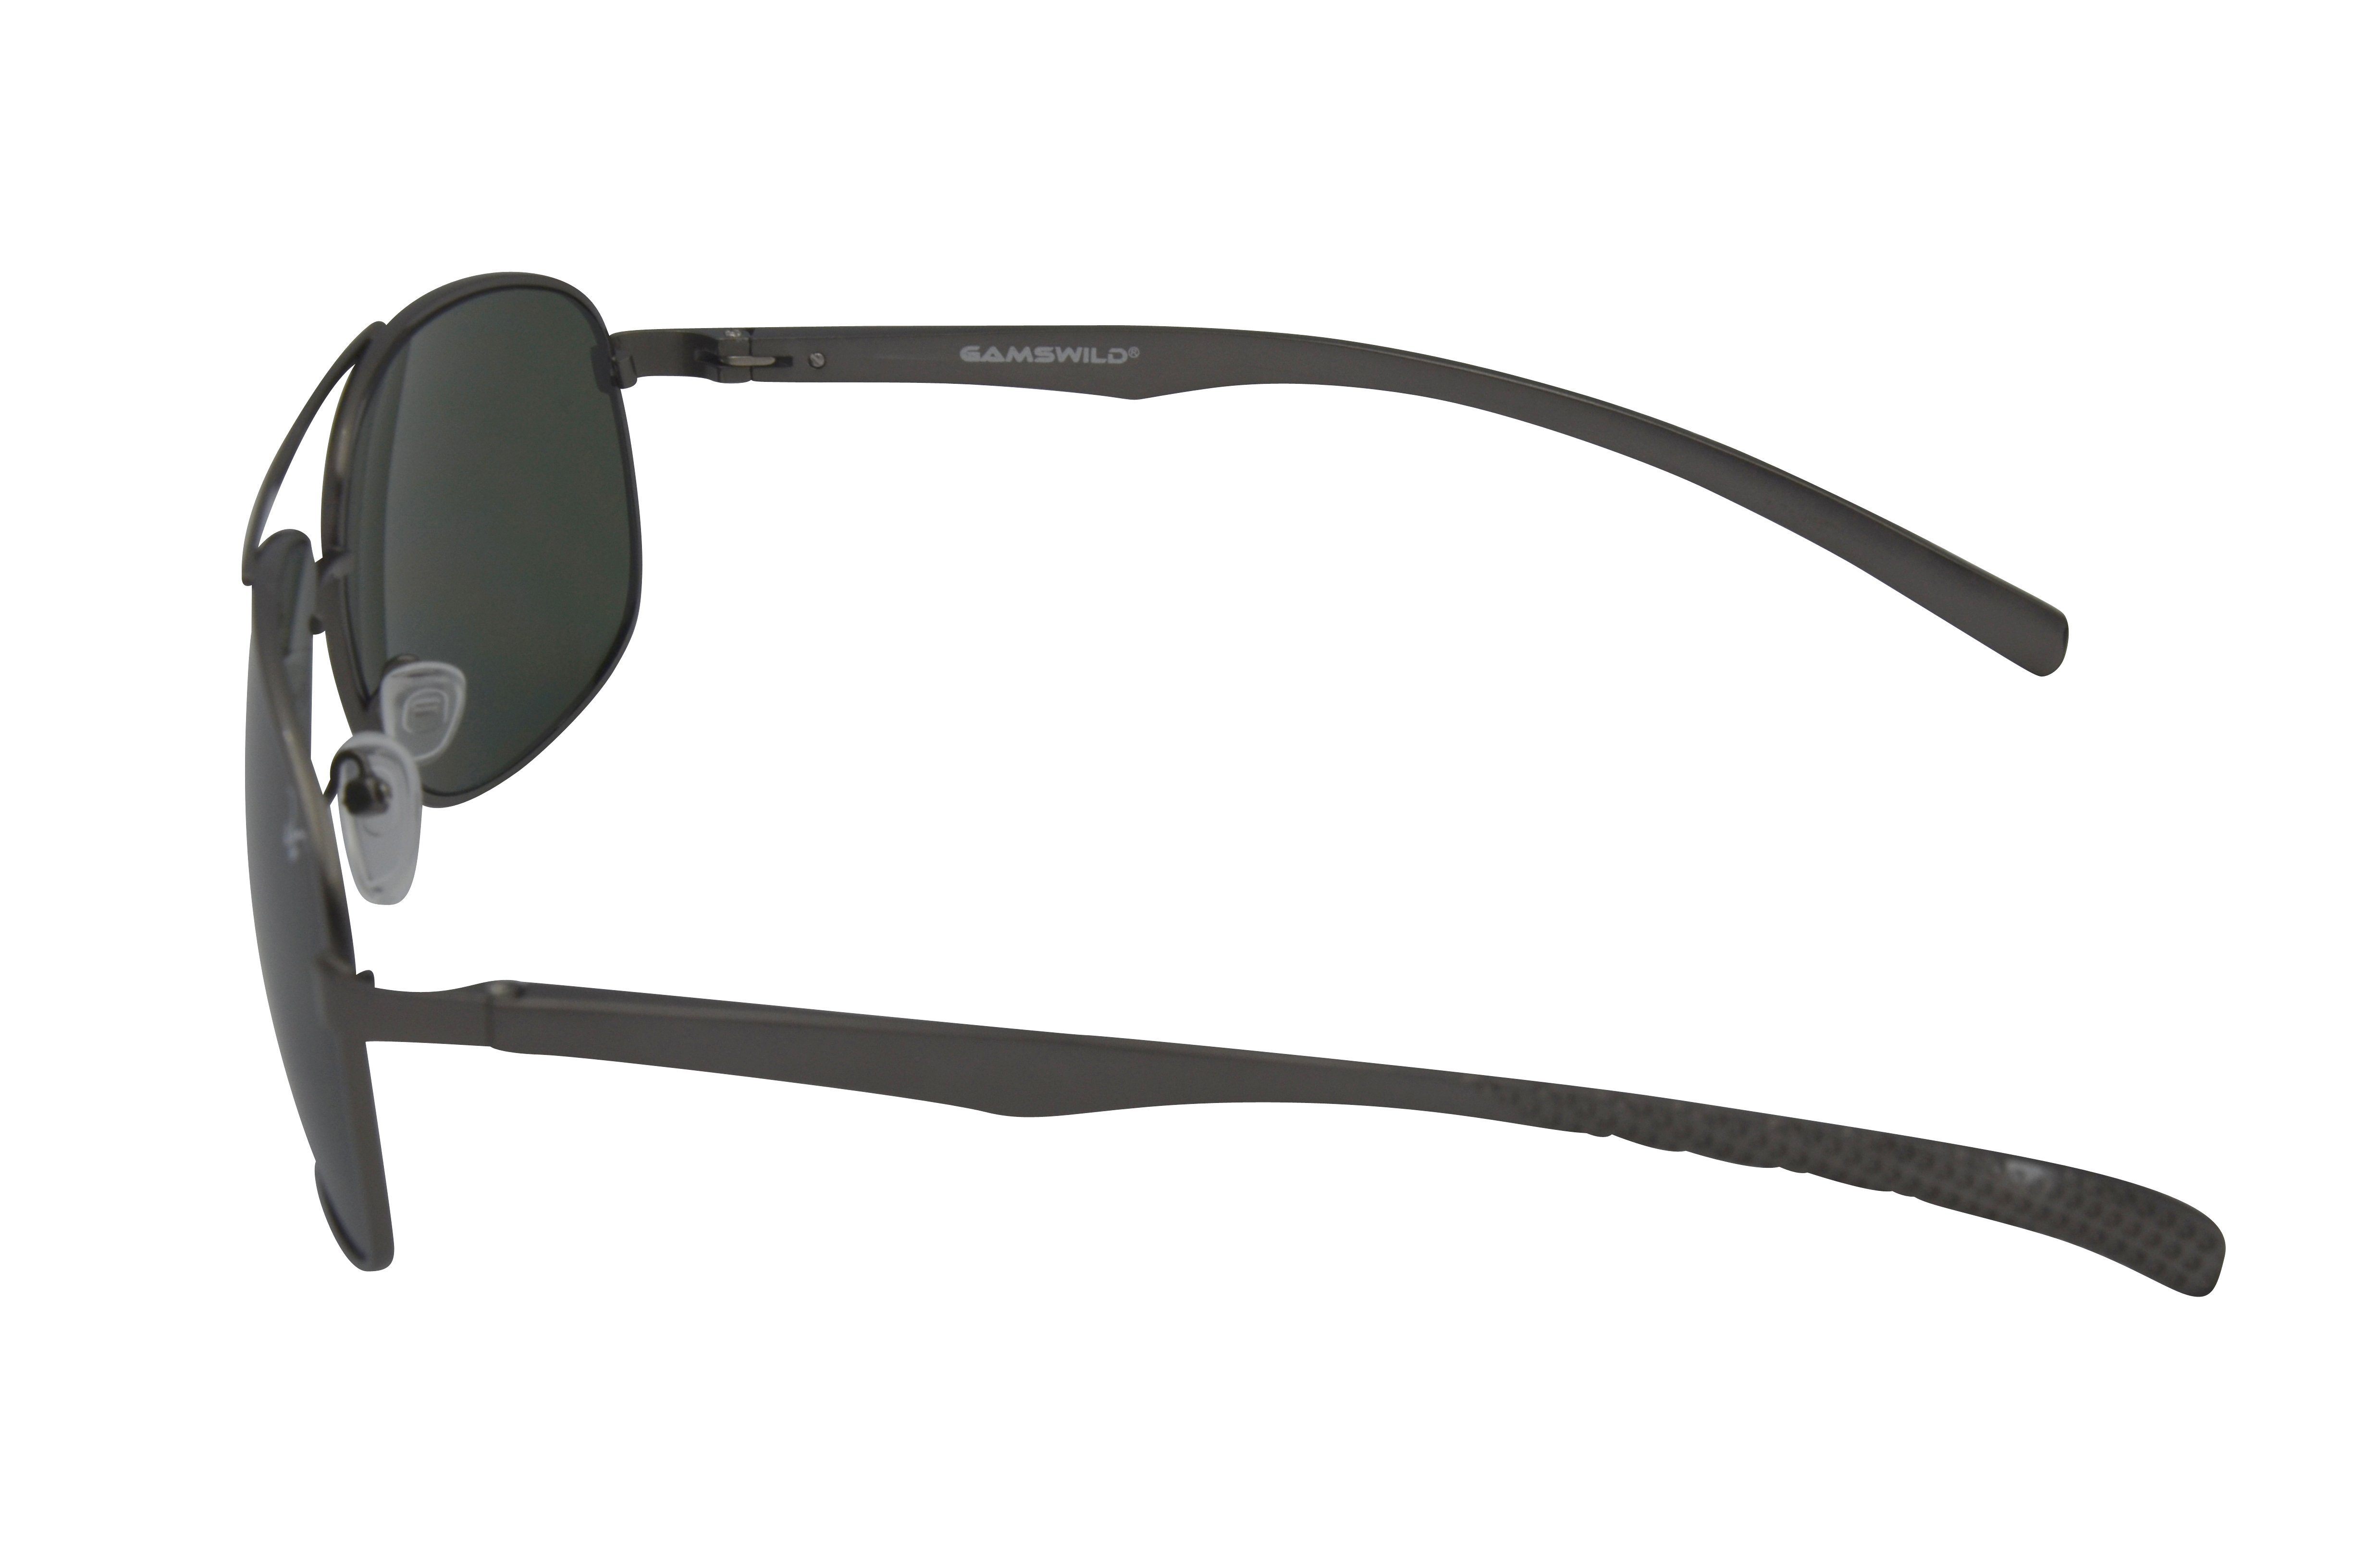 GAMSSTYLE Pilotenbrille silber-grau, Sonnenbrille Gamswild Mode grau-grün Damen WM1322 Unisex, Herren blau-gold, Brille